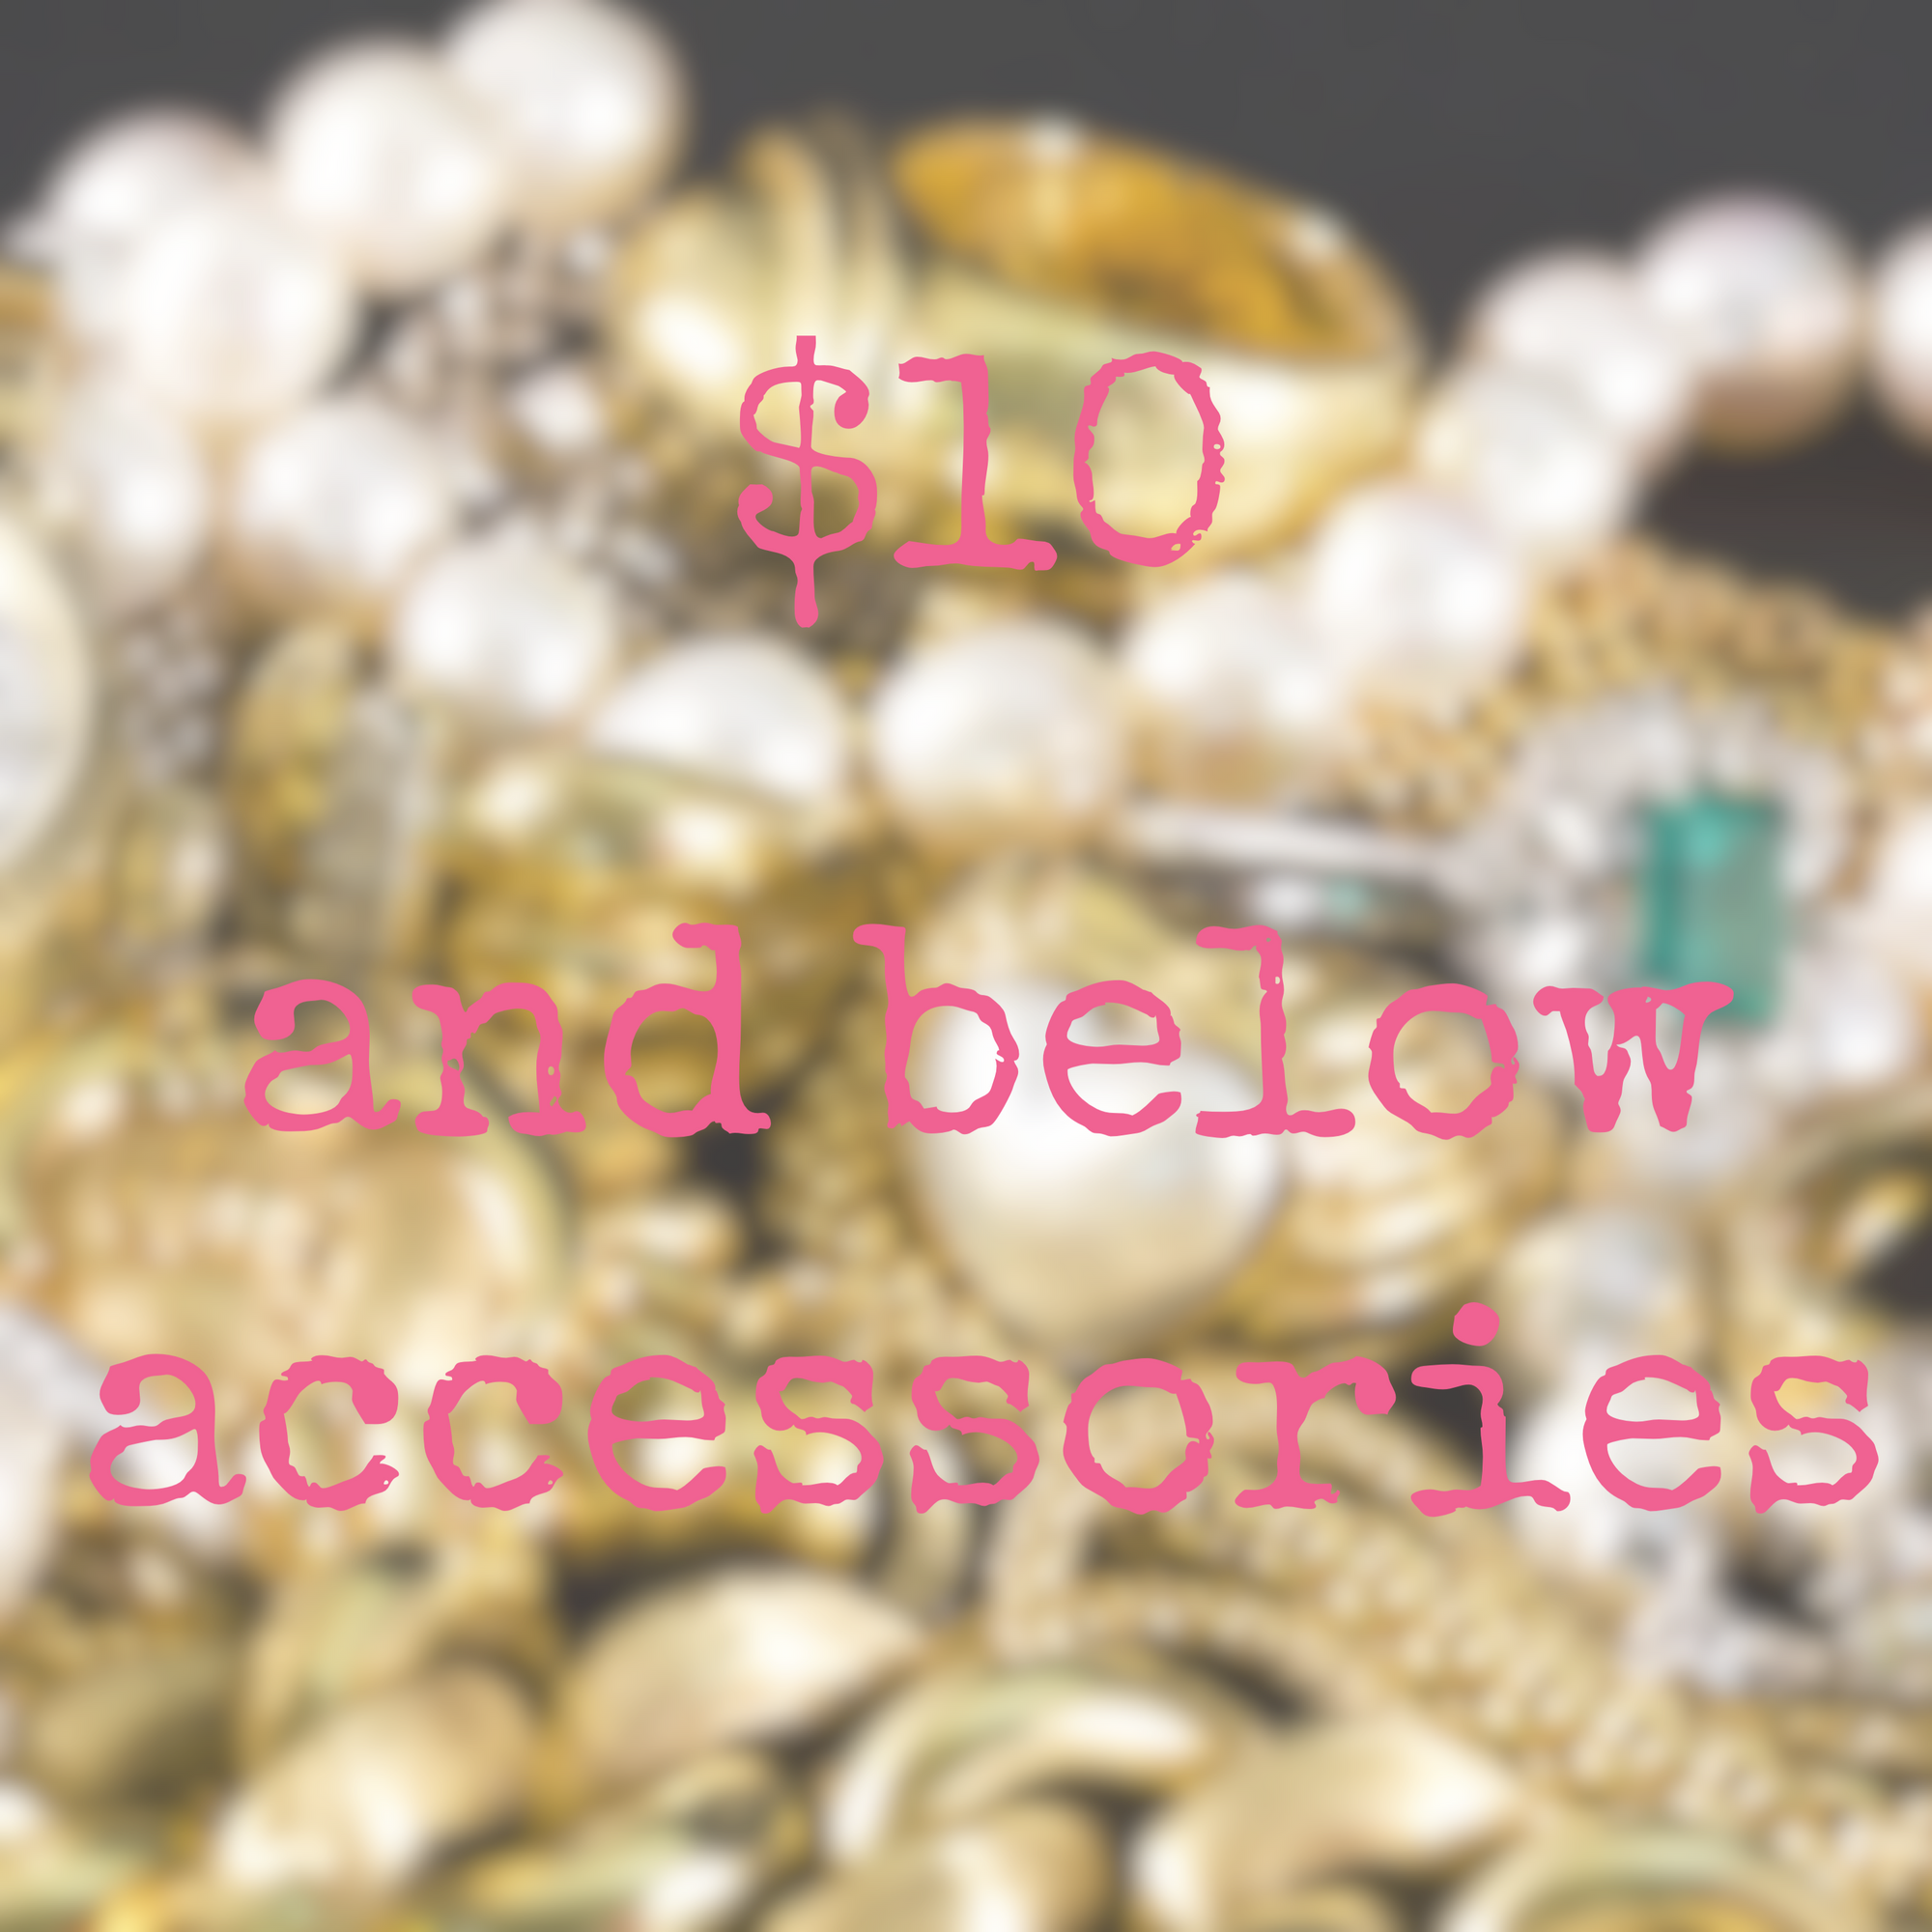 Below $10 accessories